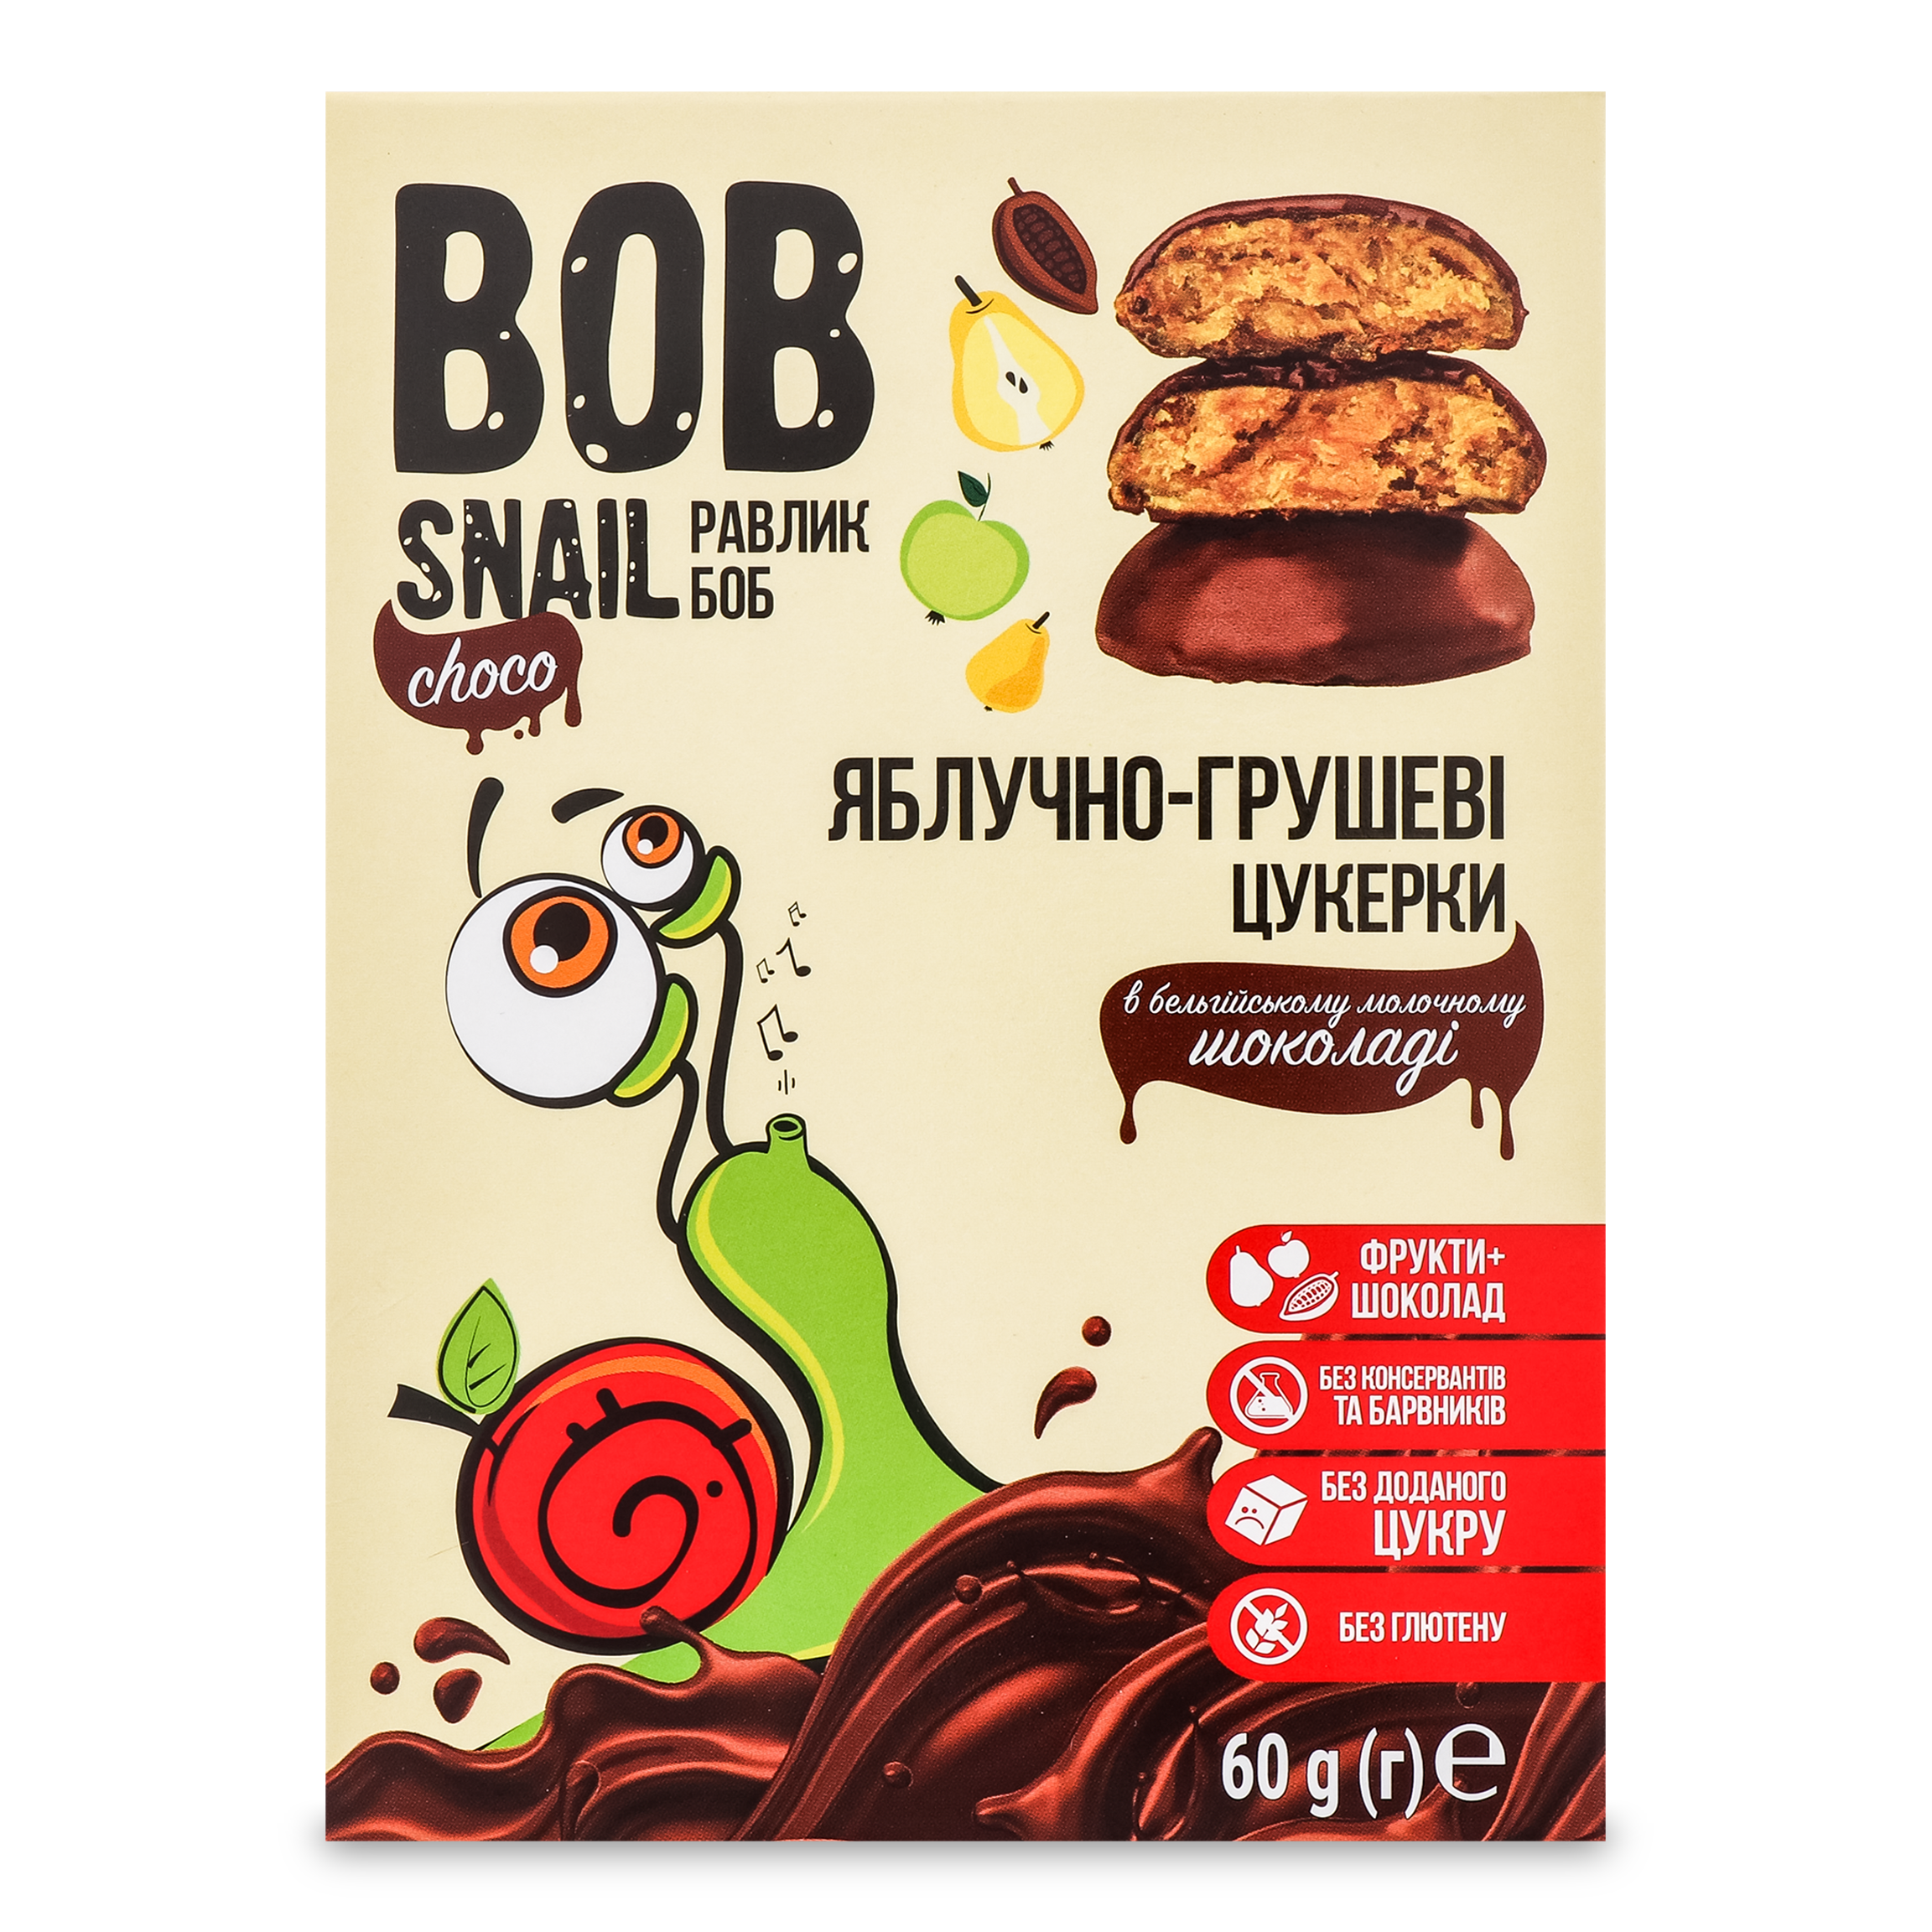 Цукерки Bob Snail яблучно-грушеві в молочному шоколаді 60г